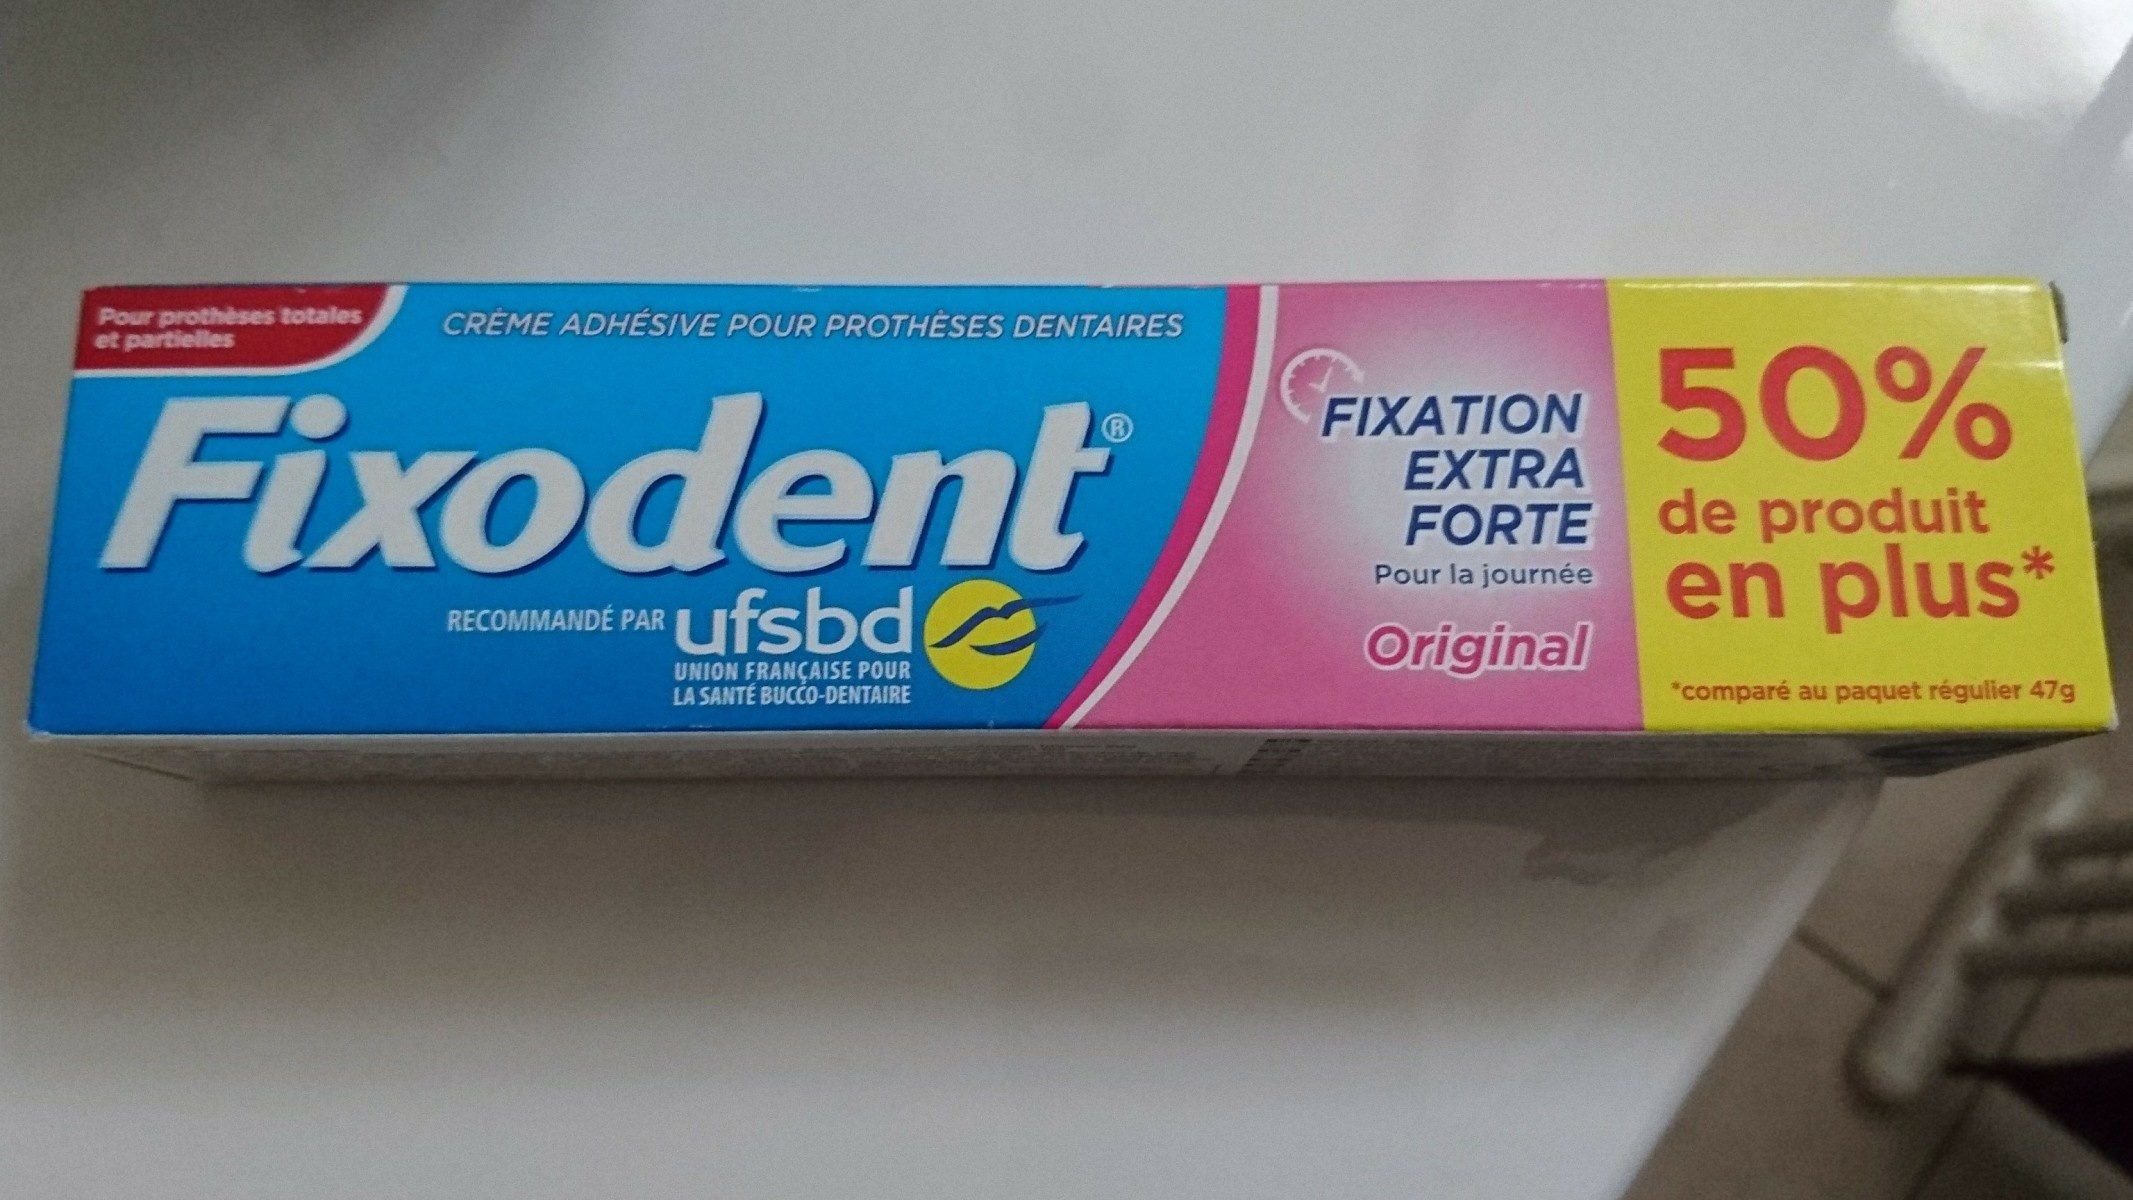 Crème adhésive prothèses dentaires fixation extra forte - Ingrédients - fr